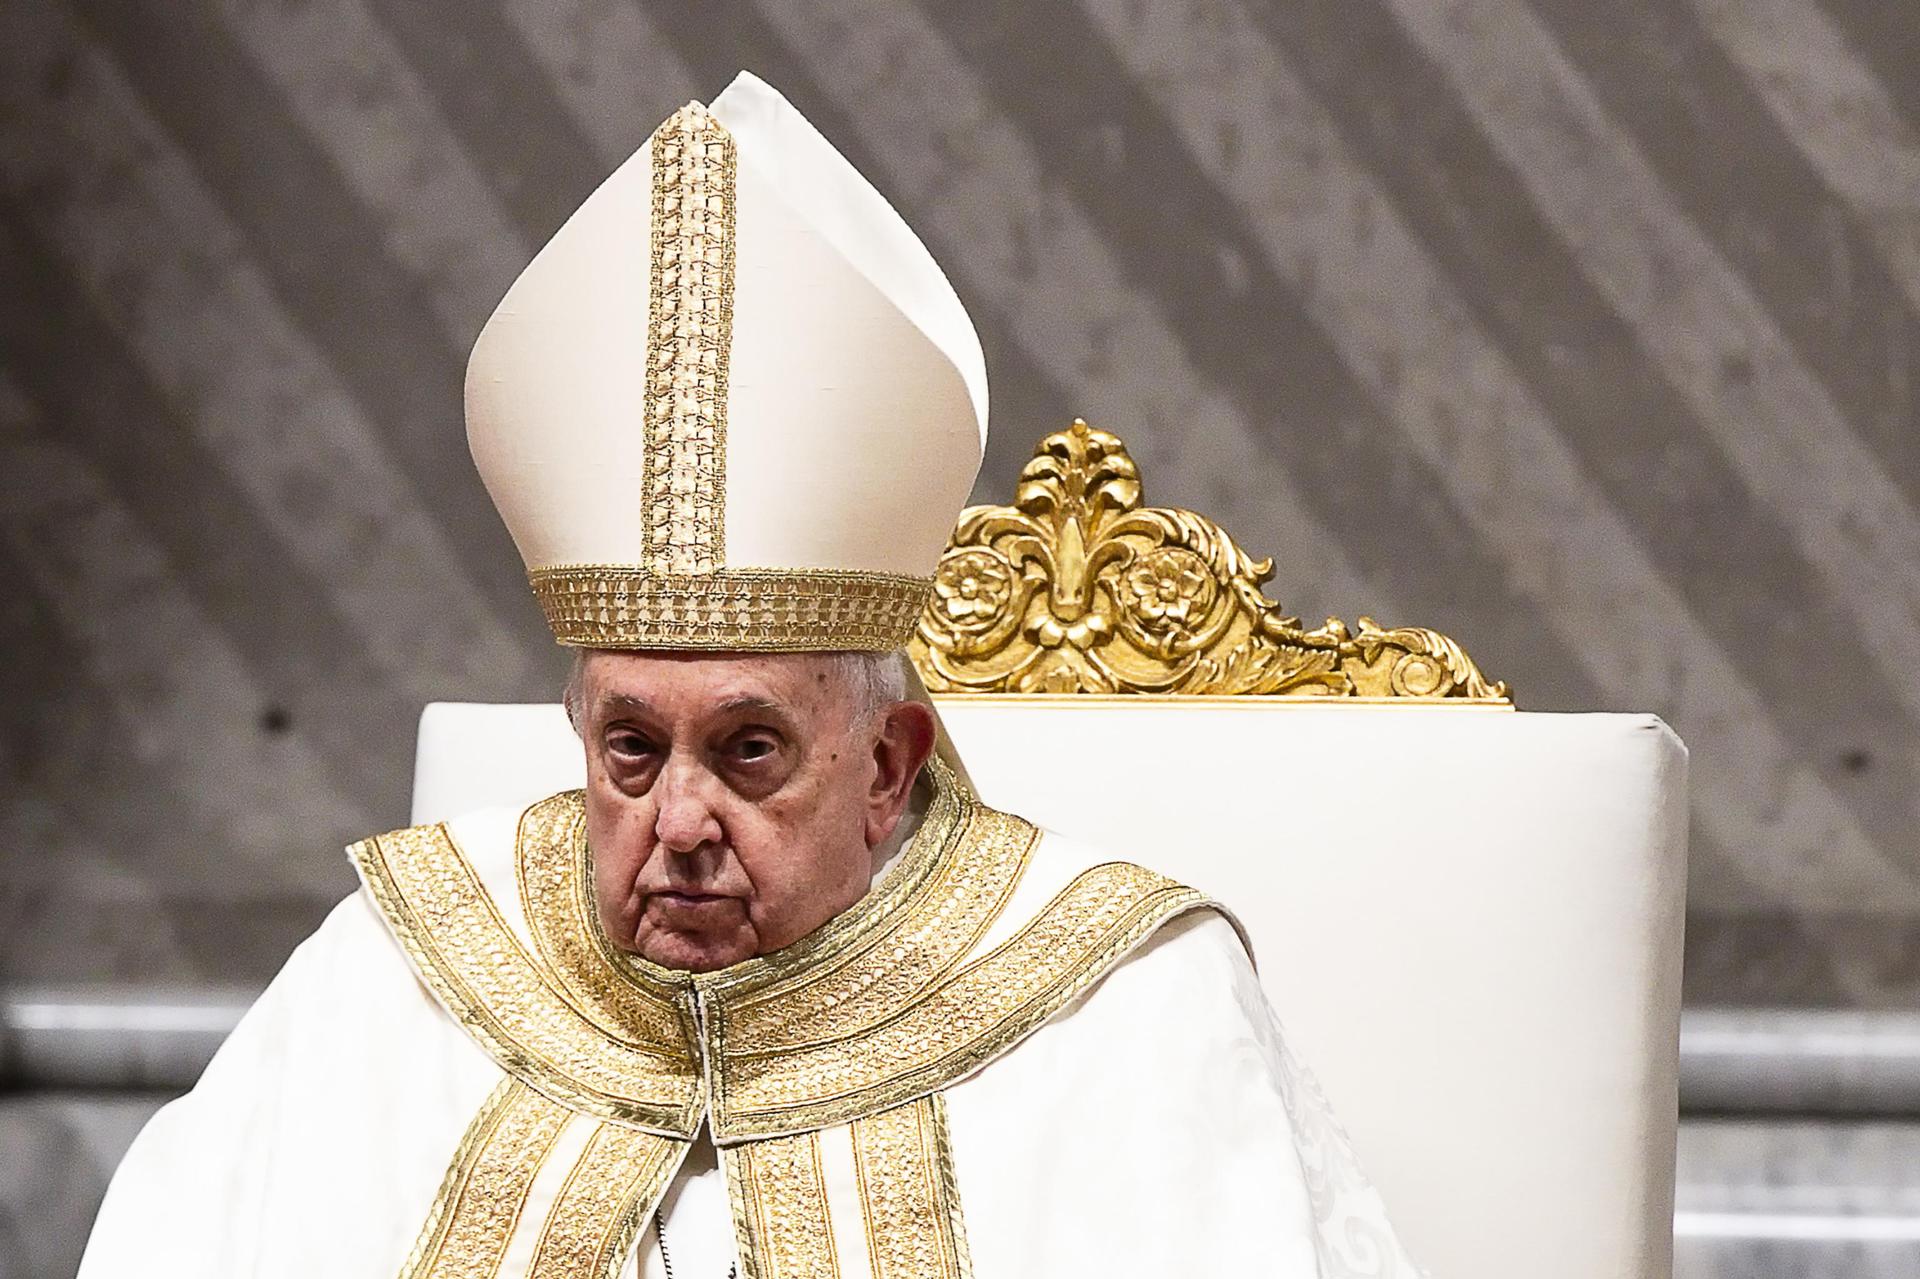 El papa Francisco cancela discurso y asegura que vuelve a tener “un poco de bronquitis”